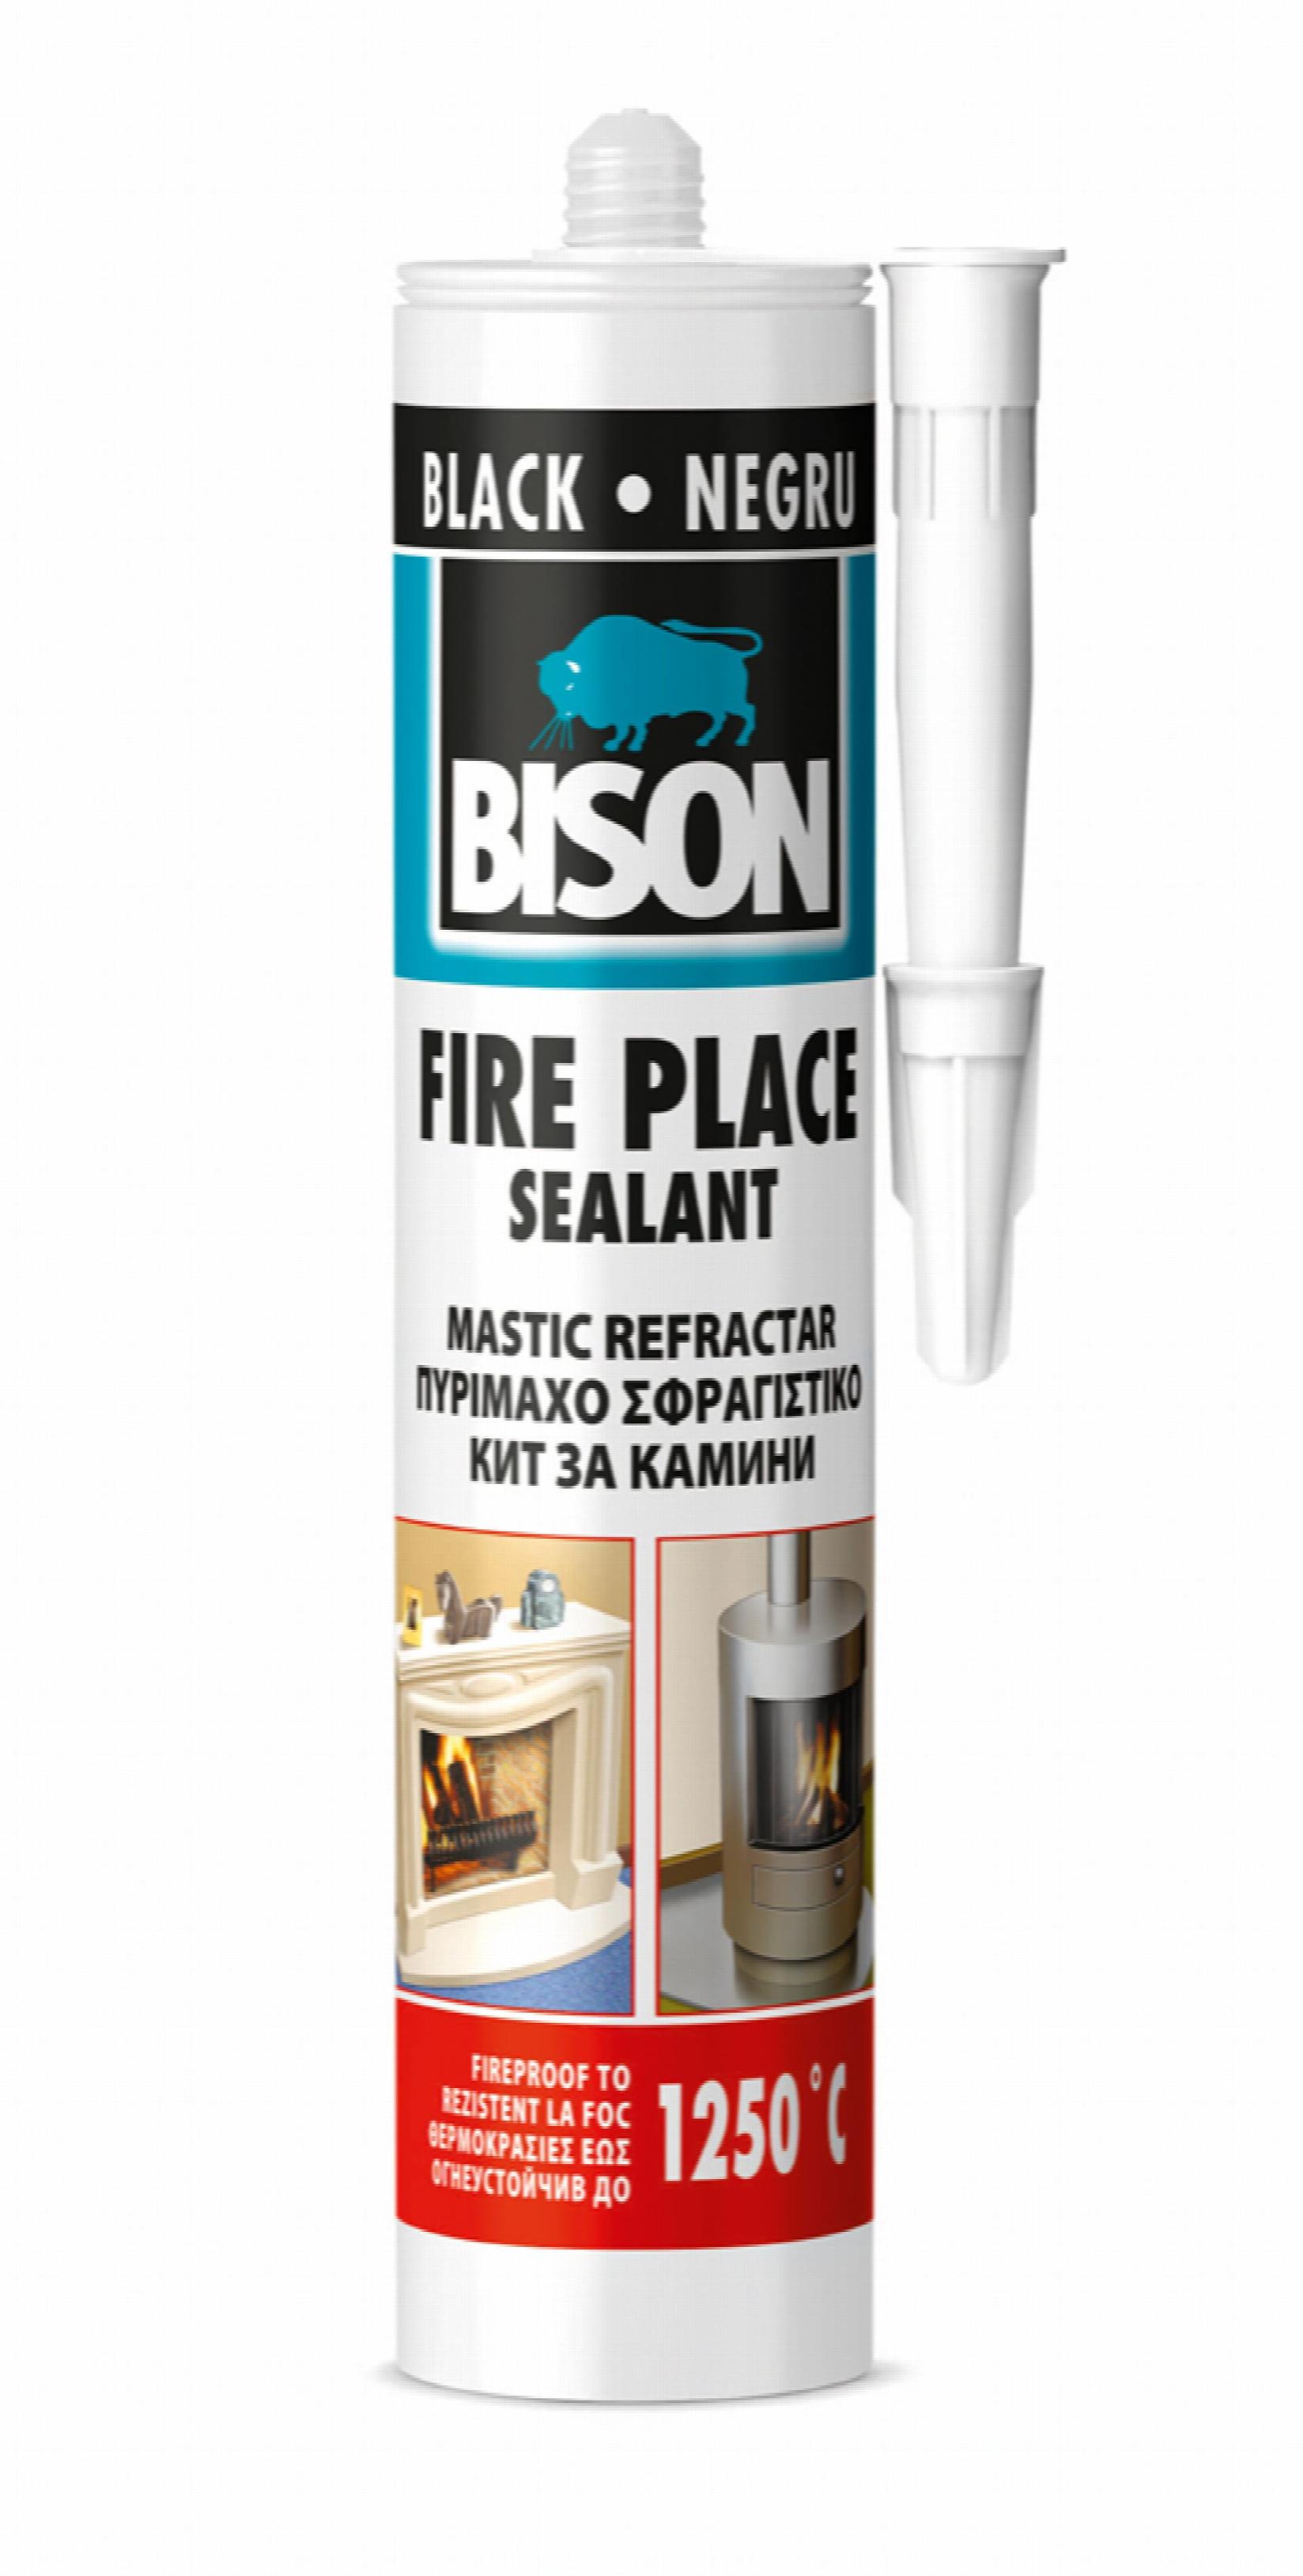 Selected image for BISON Vatrostalni zaptivač Fire Place 1250°C 530 gr 176154